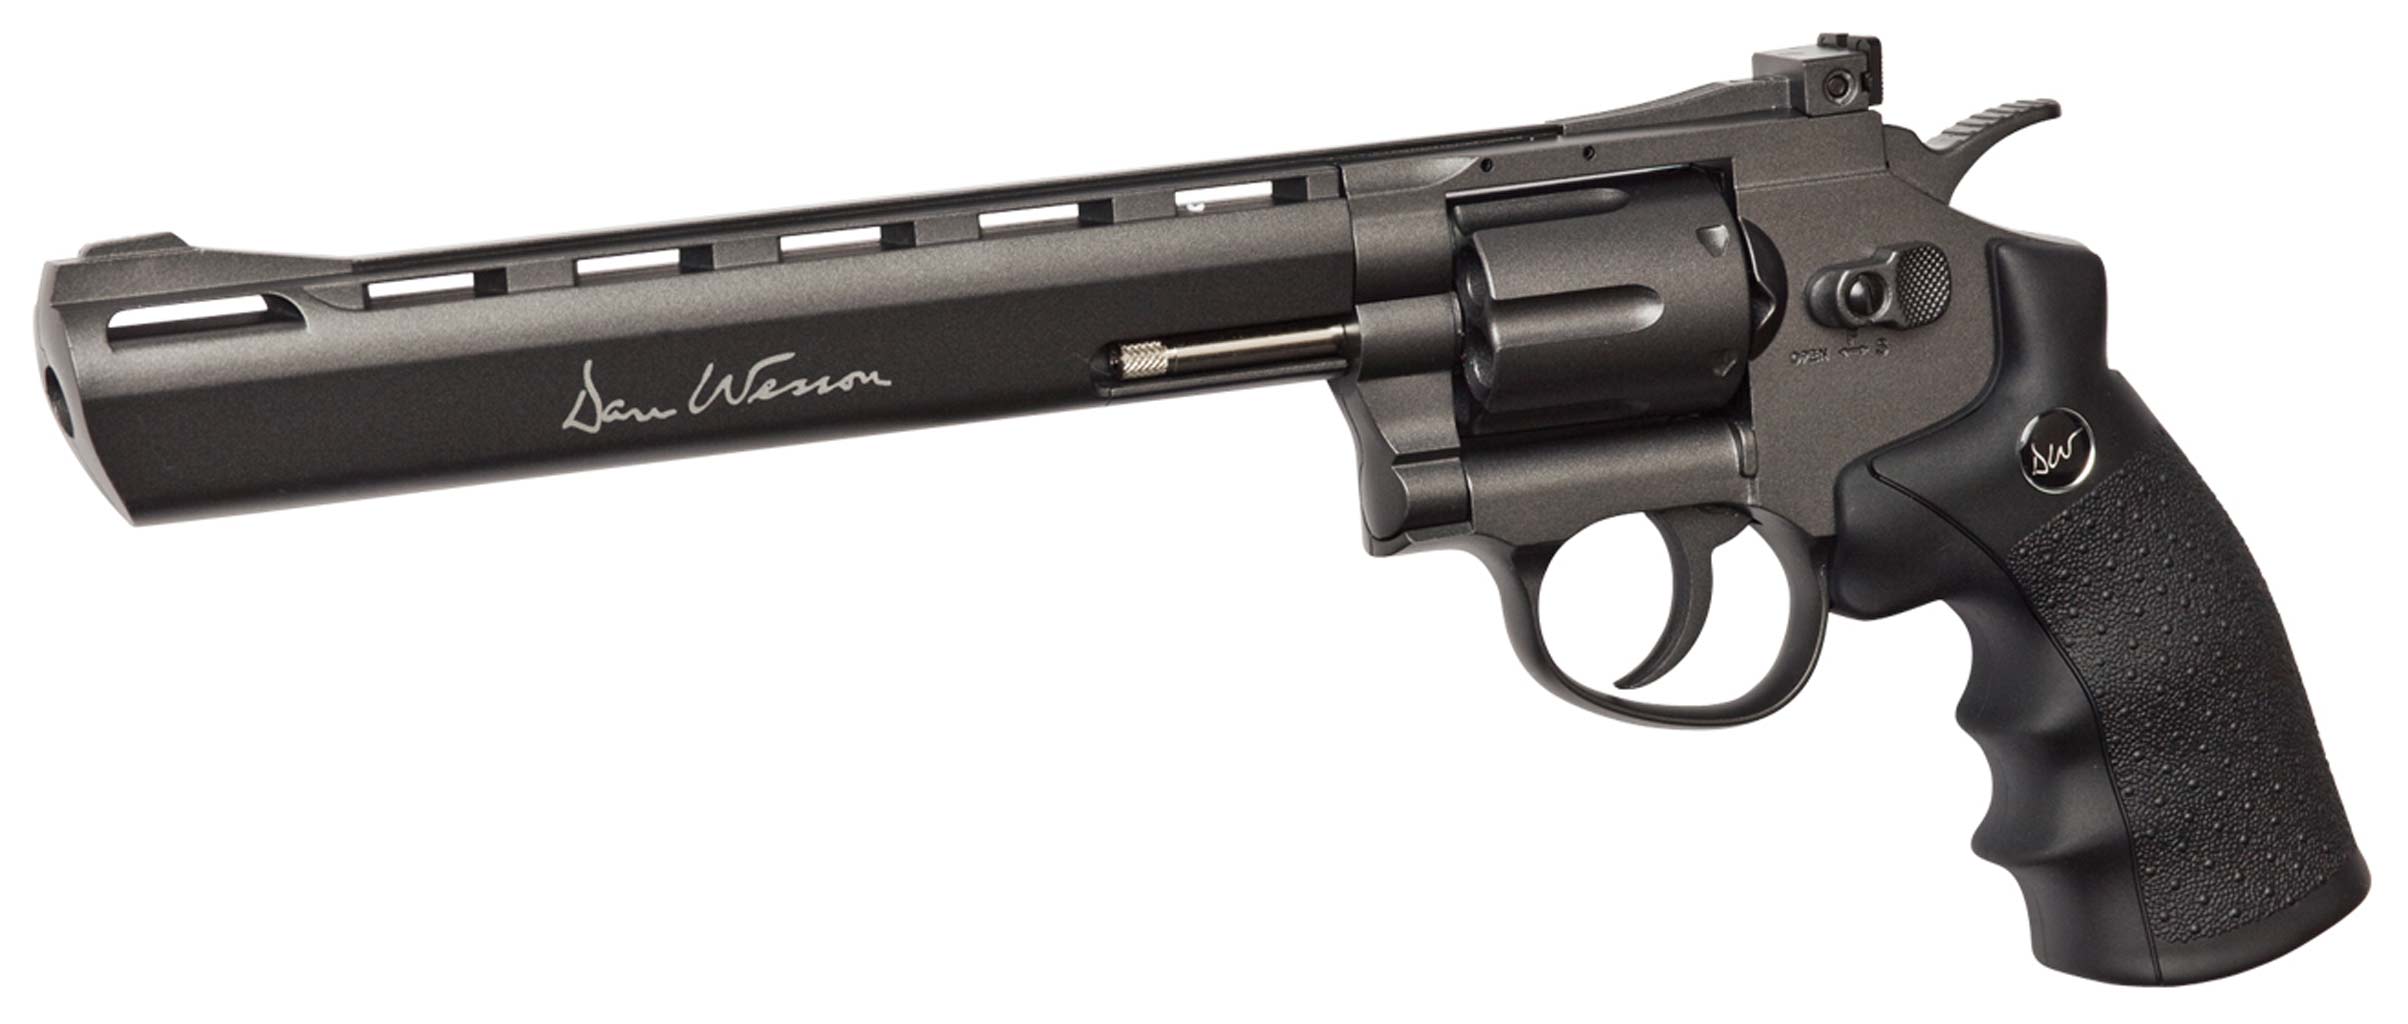 Dan Wesson 8 co2 revolver - Kraftfull co2 revolver